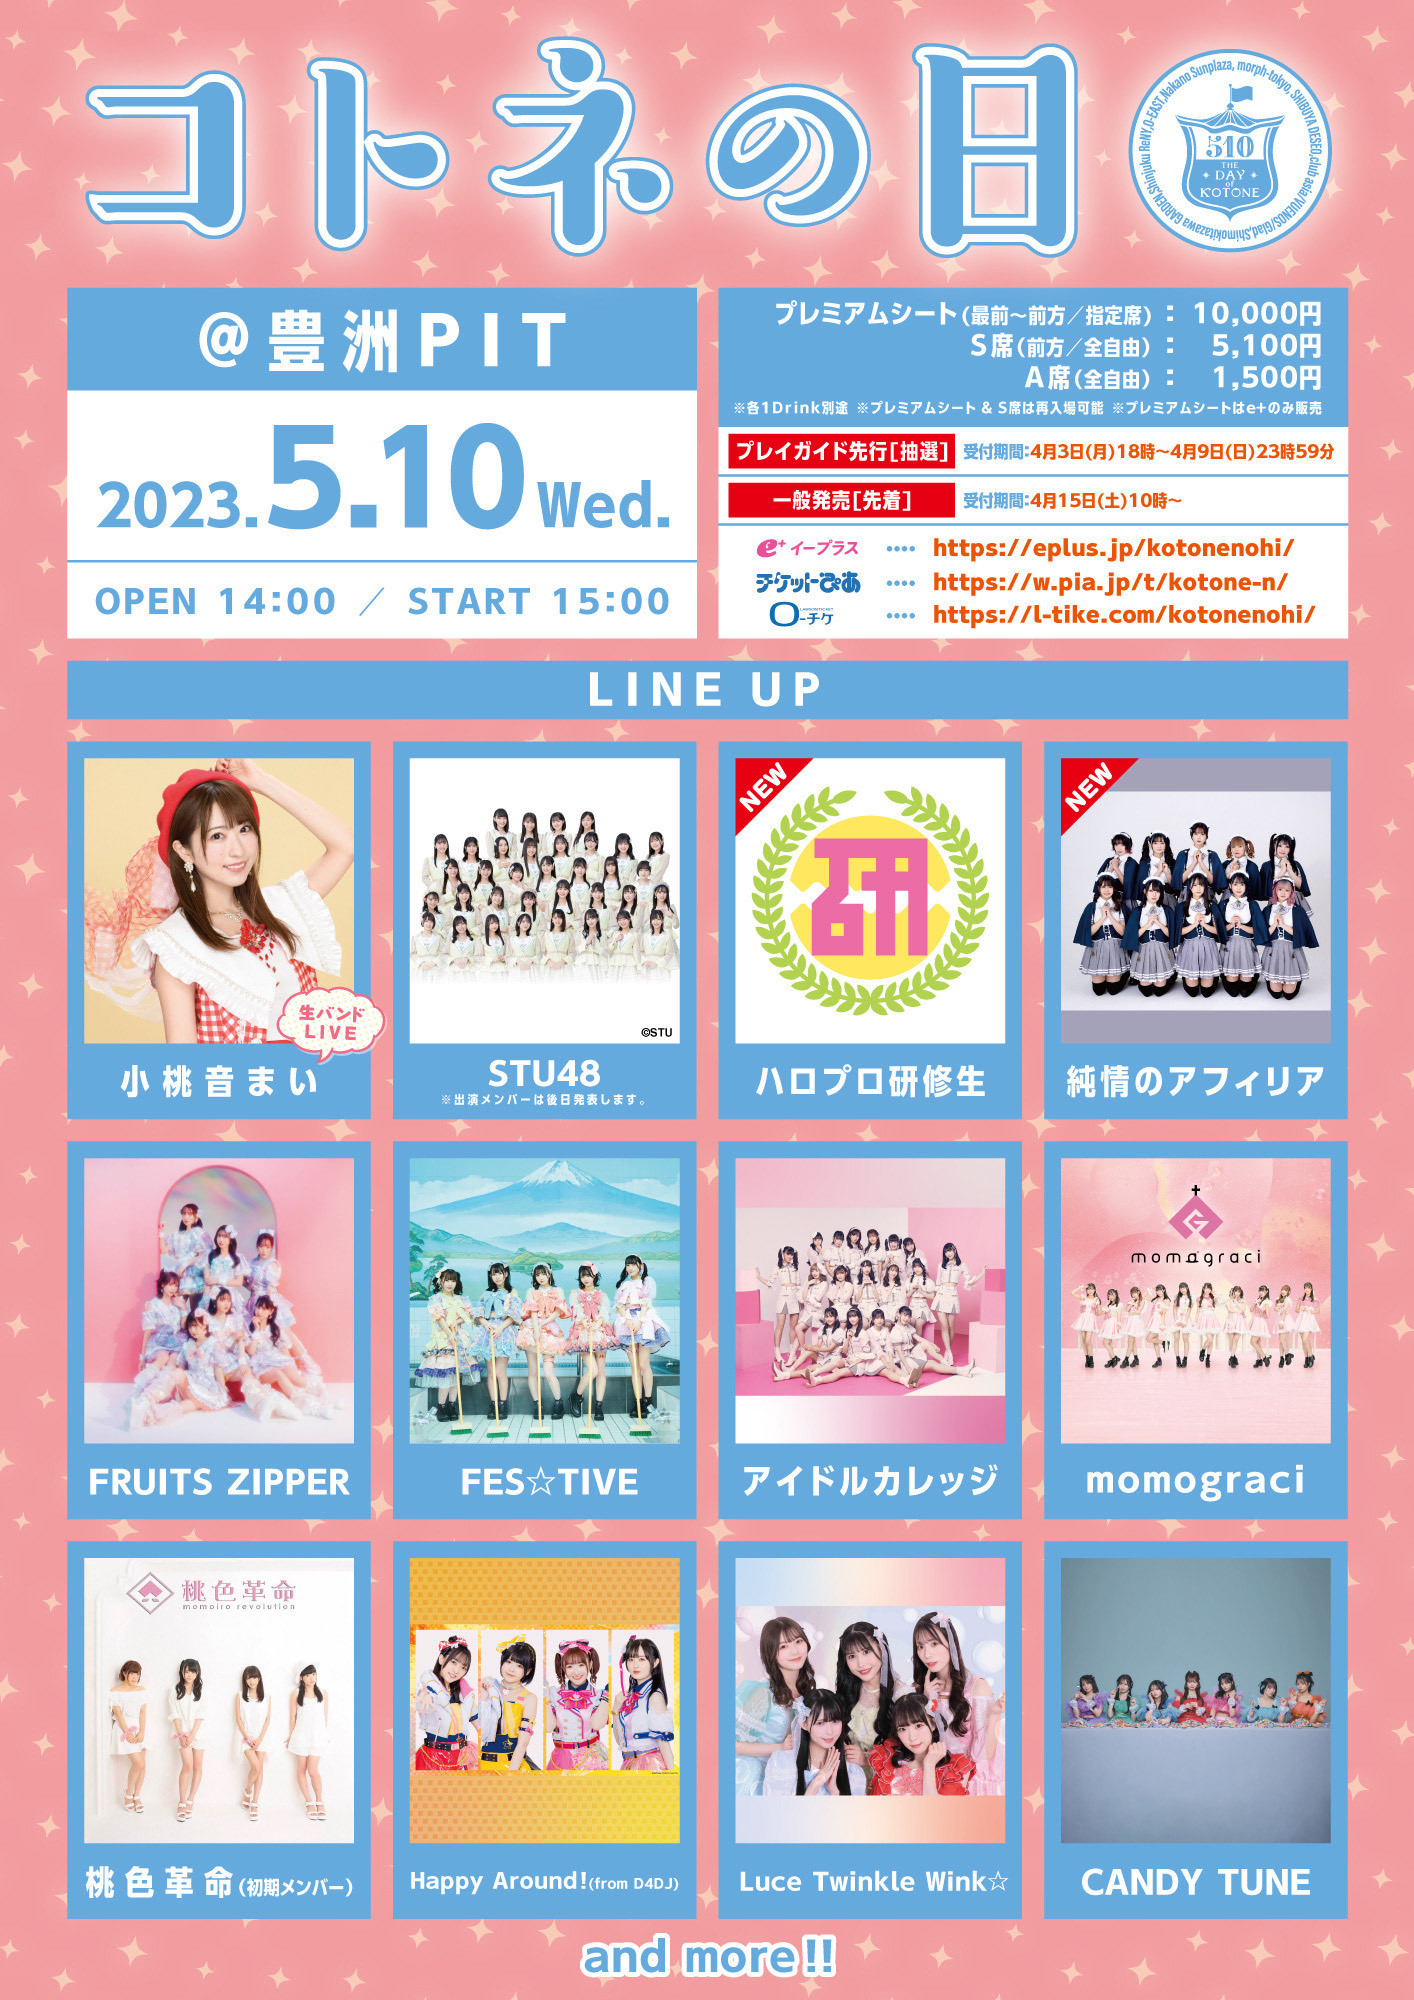 小桃音まいが主催するアイドルフェス「コトネの日」が
5月10日に豊洲PITで開催！
STU48、ハロプロ研修生ユニット’23など15組のアイドルが集結